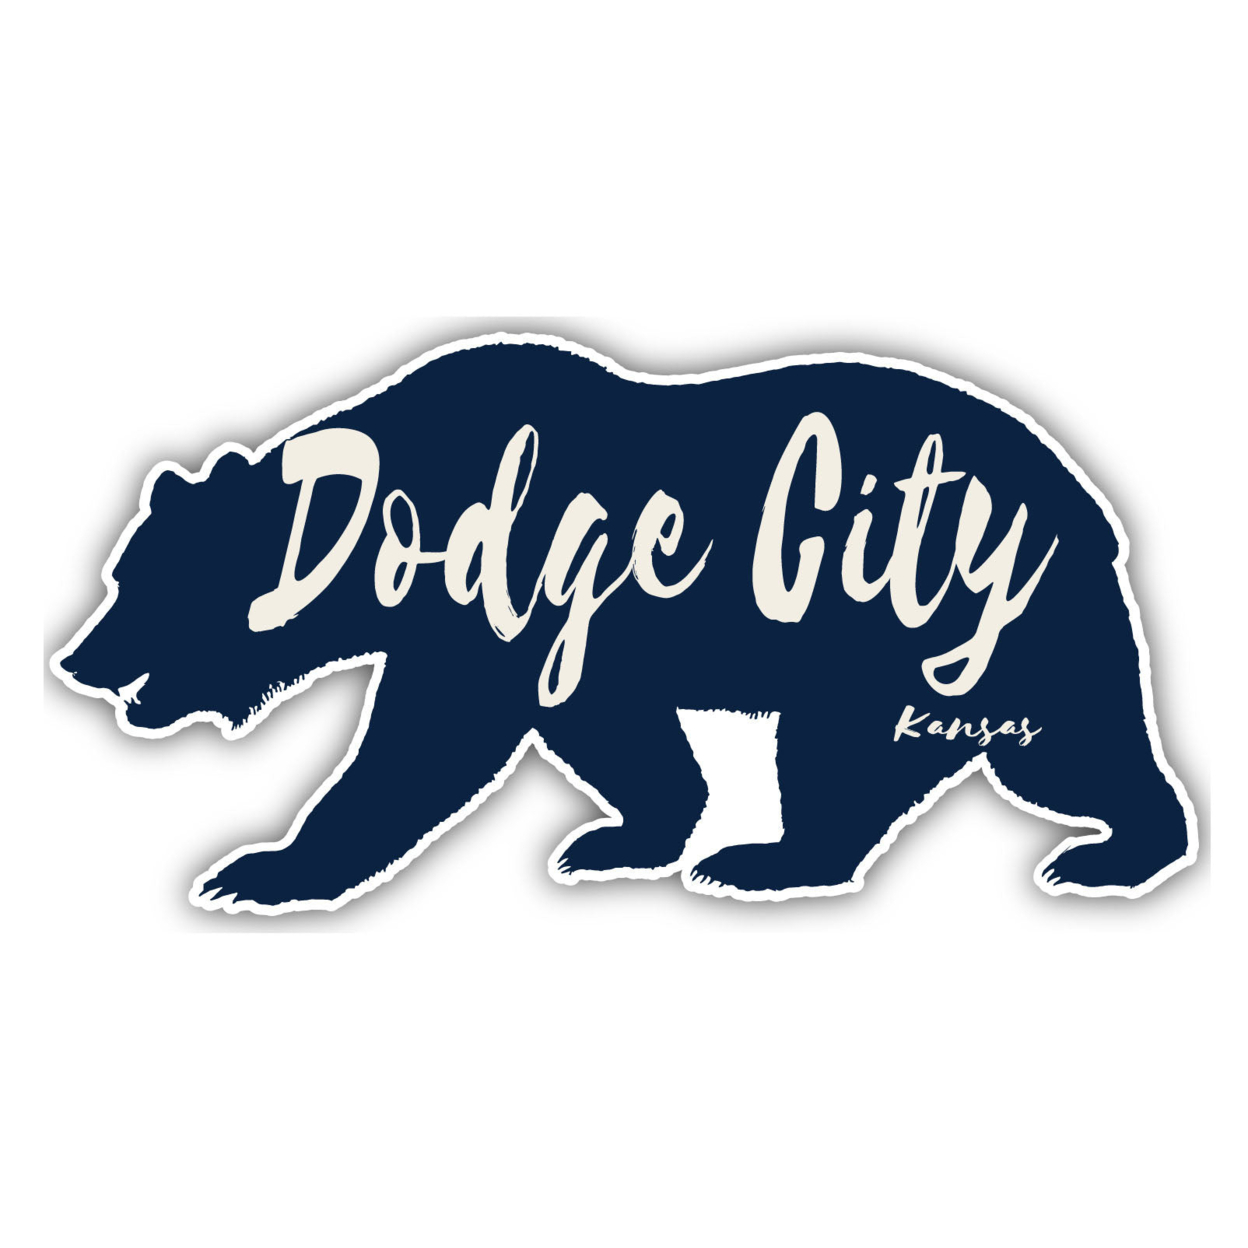 Dodge City Kansas Souvenir Decorative Stickers (Choose Theme And Size) - Single Unit, 8-Inch, Tent